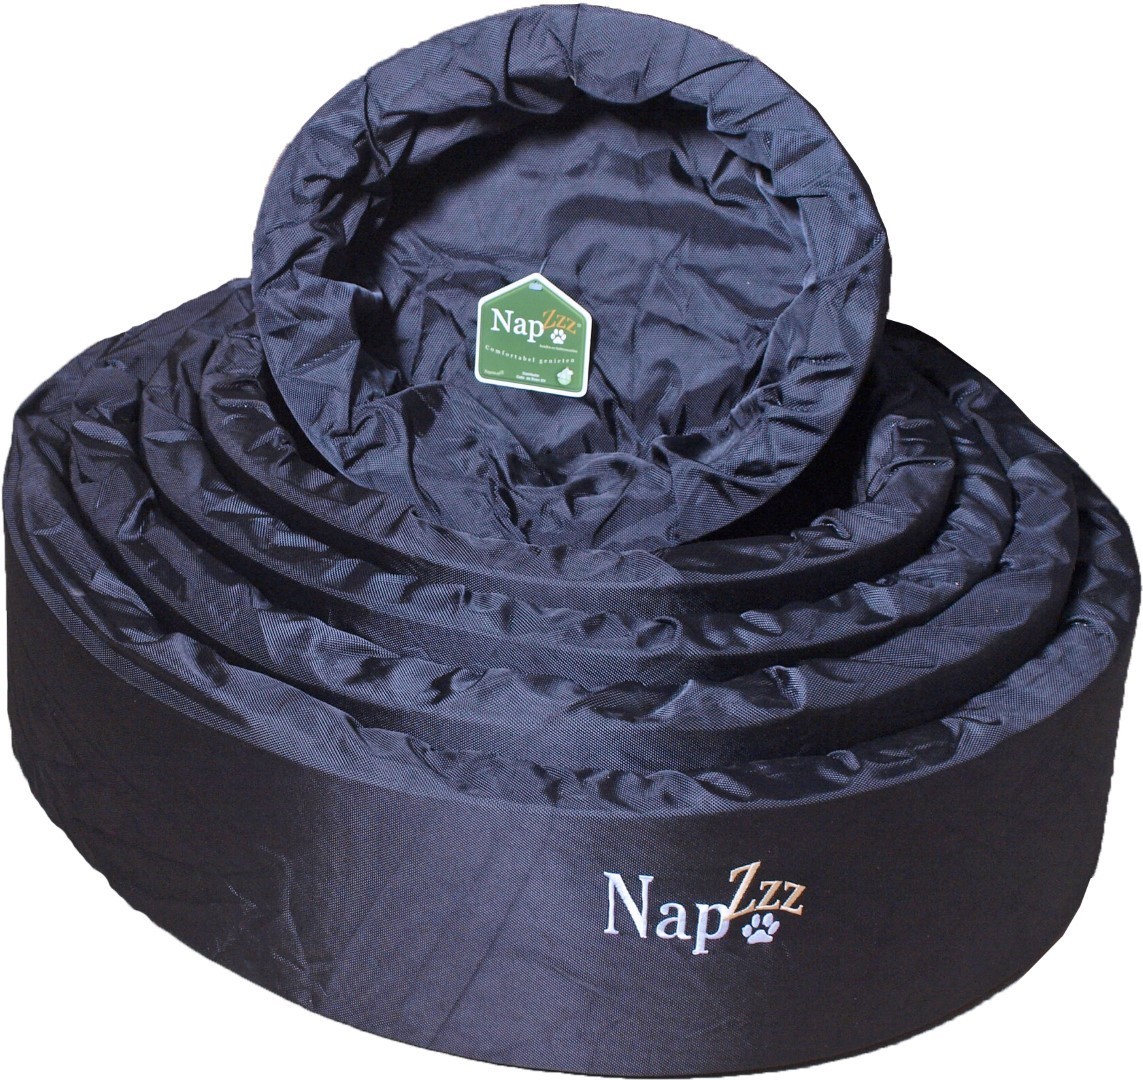 Gebr. de Boon Nap'zzz waterproof mand rond nr. 1/40 cm - Zwart